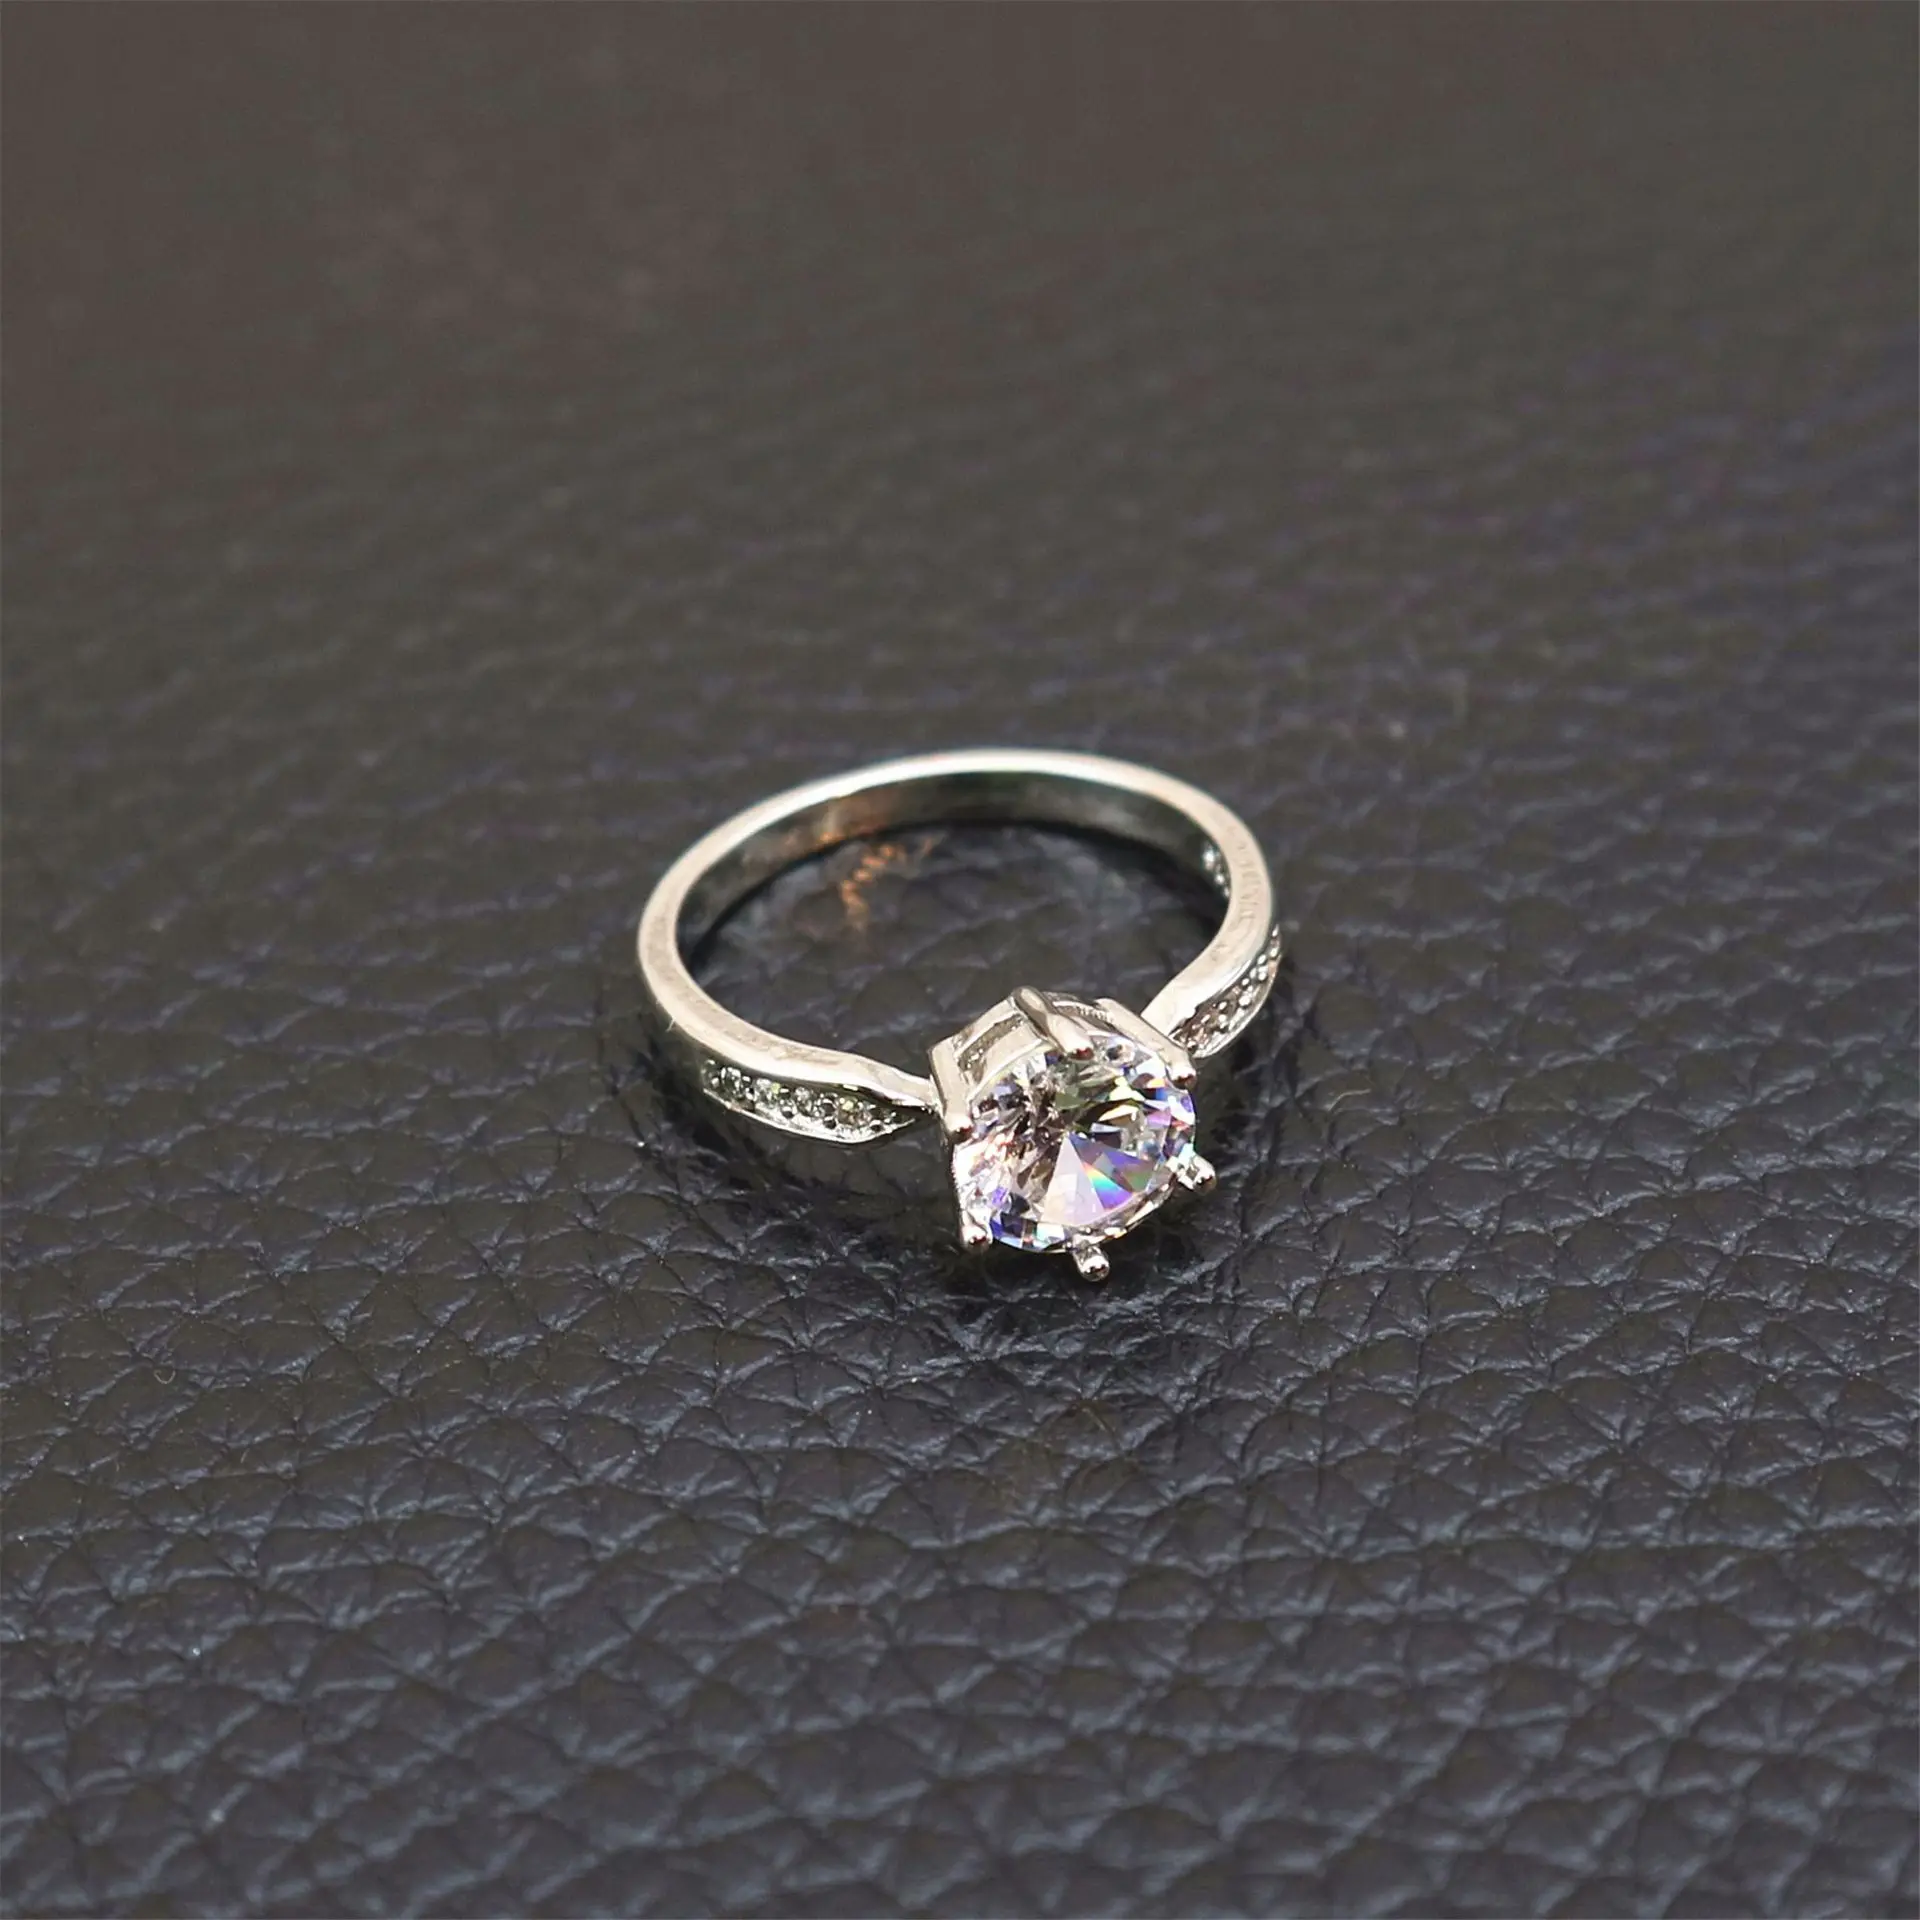 1 шт. распродажа обручальные кольца с цирконием для женщин цвета розового золота женские обручальные кольца Anel ювелирные изделия с австрийскими кристаллами высшего качества